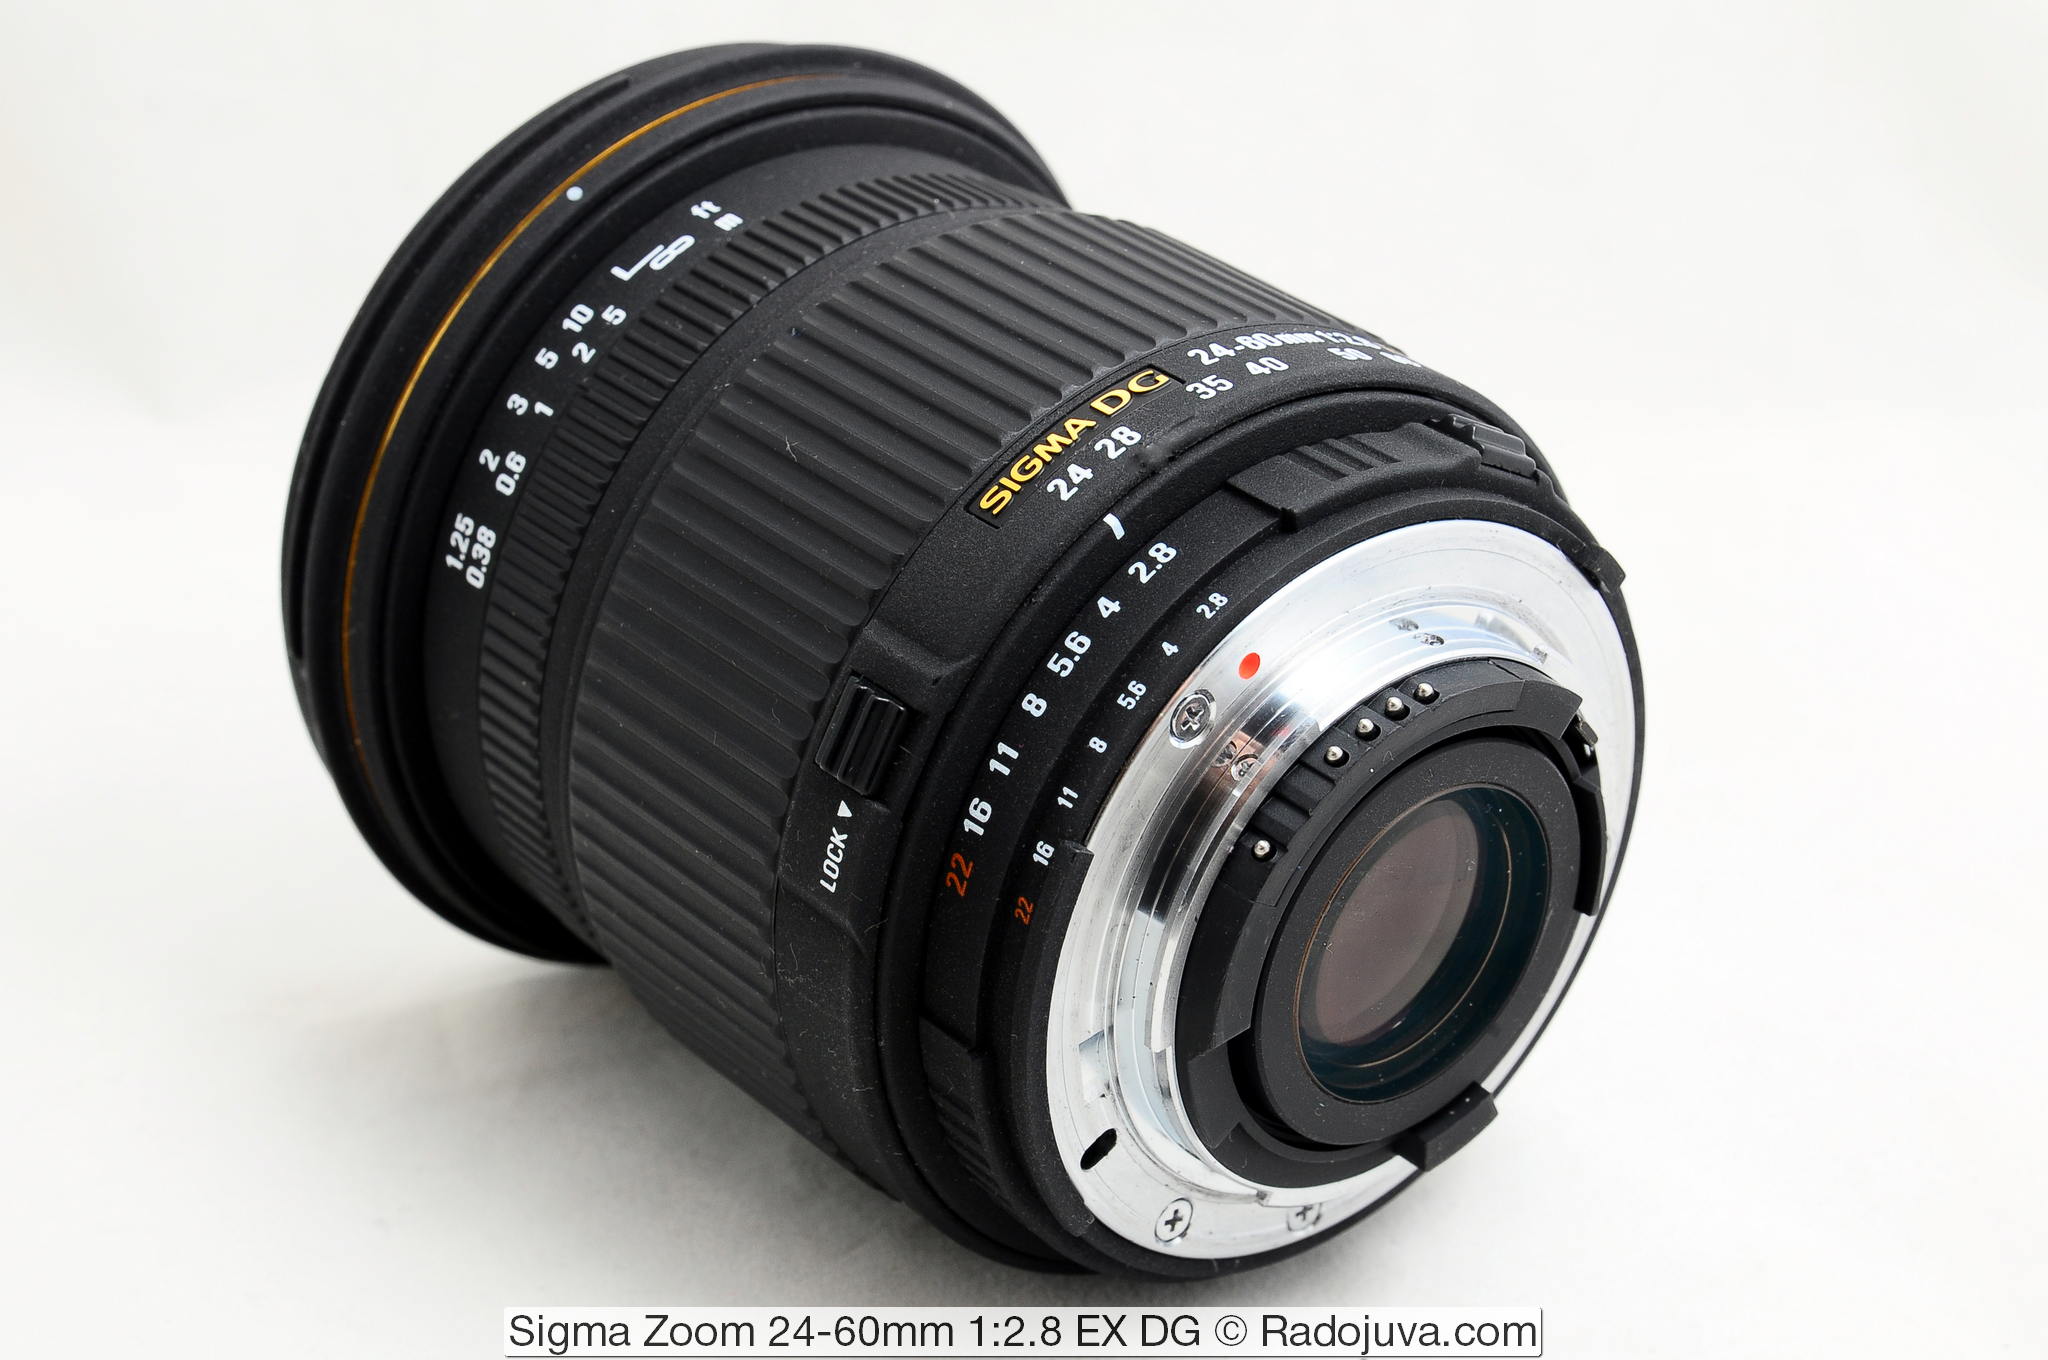 Sigma Zoom 24-60mm 1: 2.8 EX DG